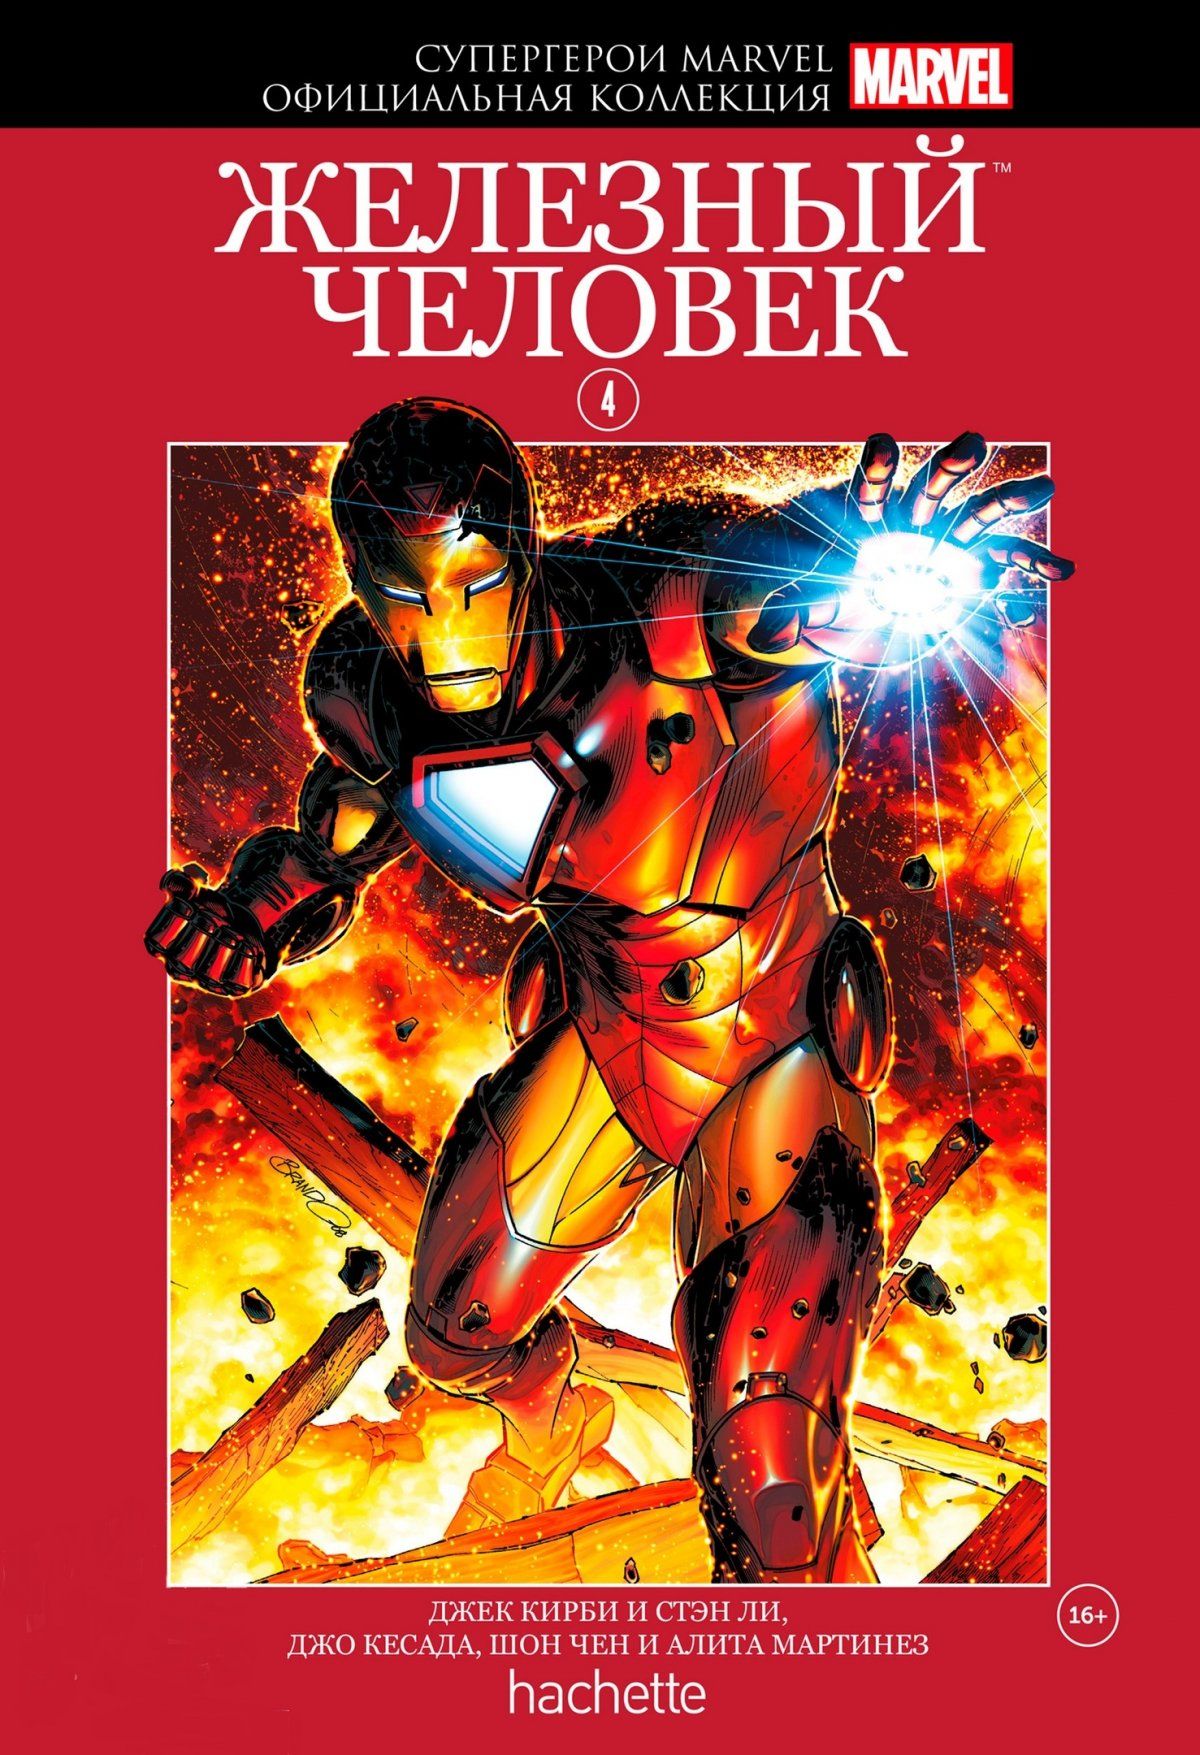 Комикс на русском языке «Супергерои Marvel. Официальная коллекция. Том 4. Железный Человек»